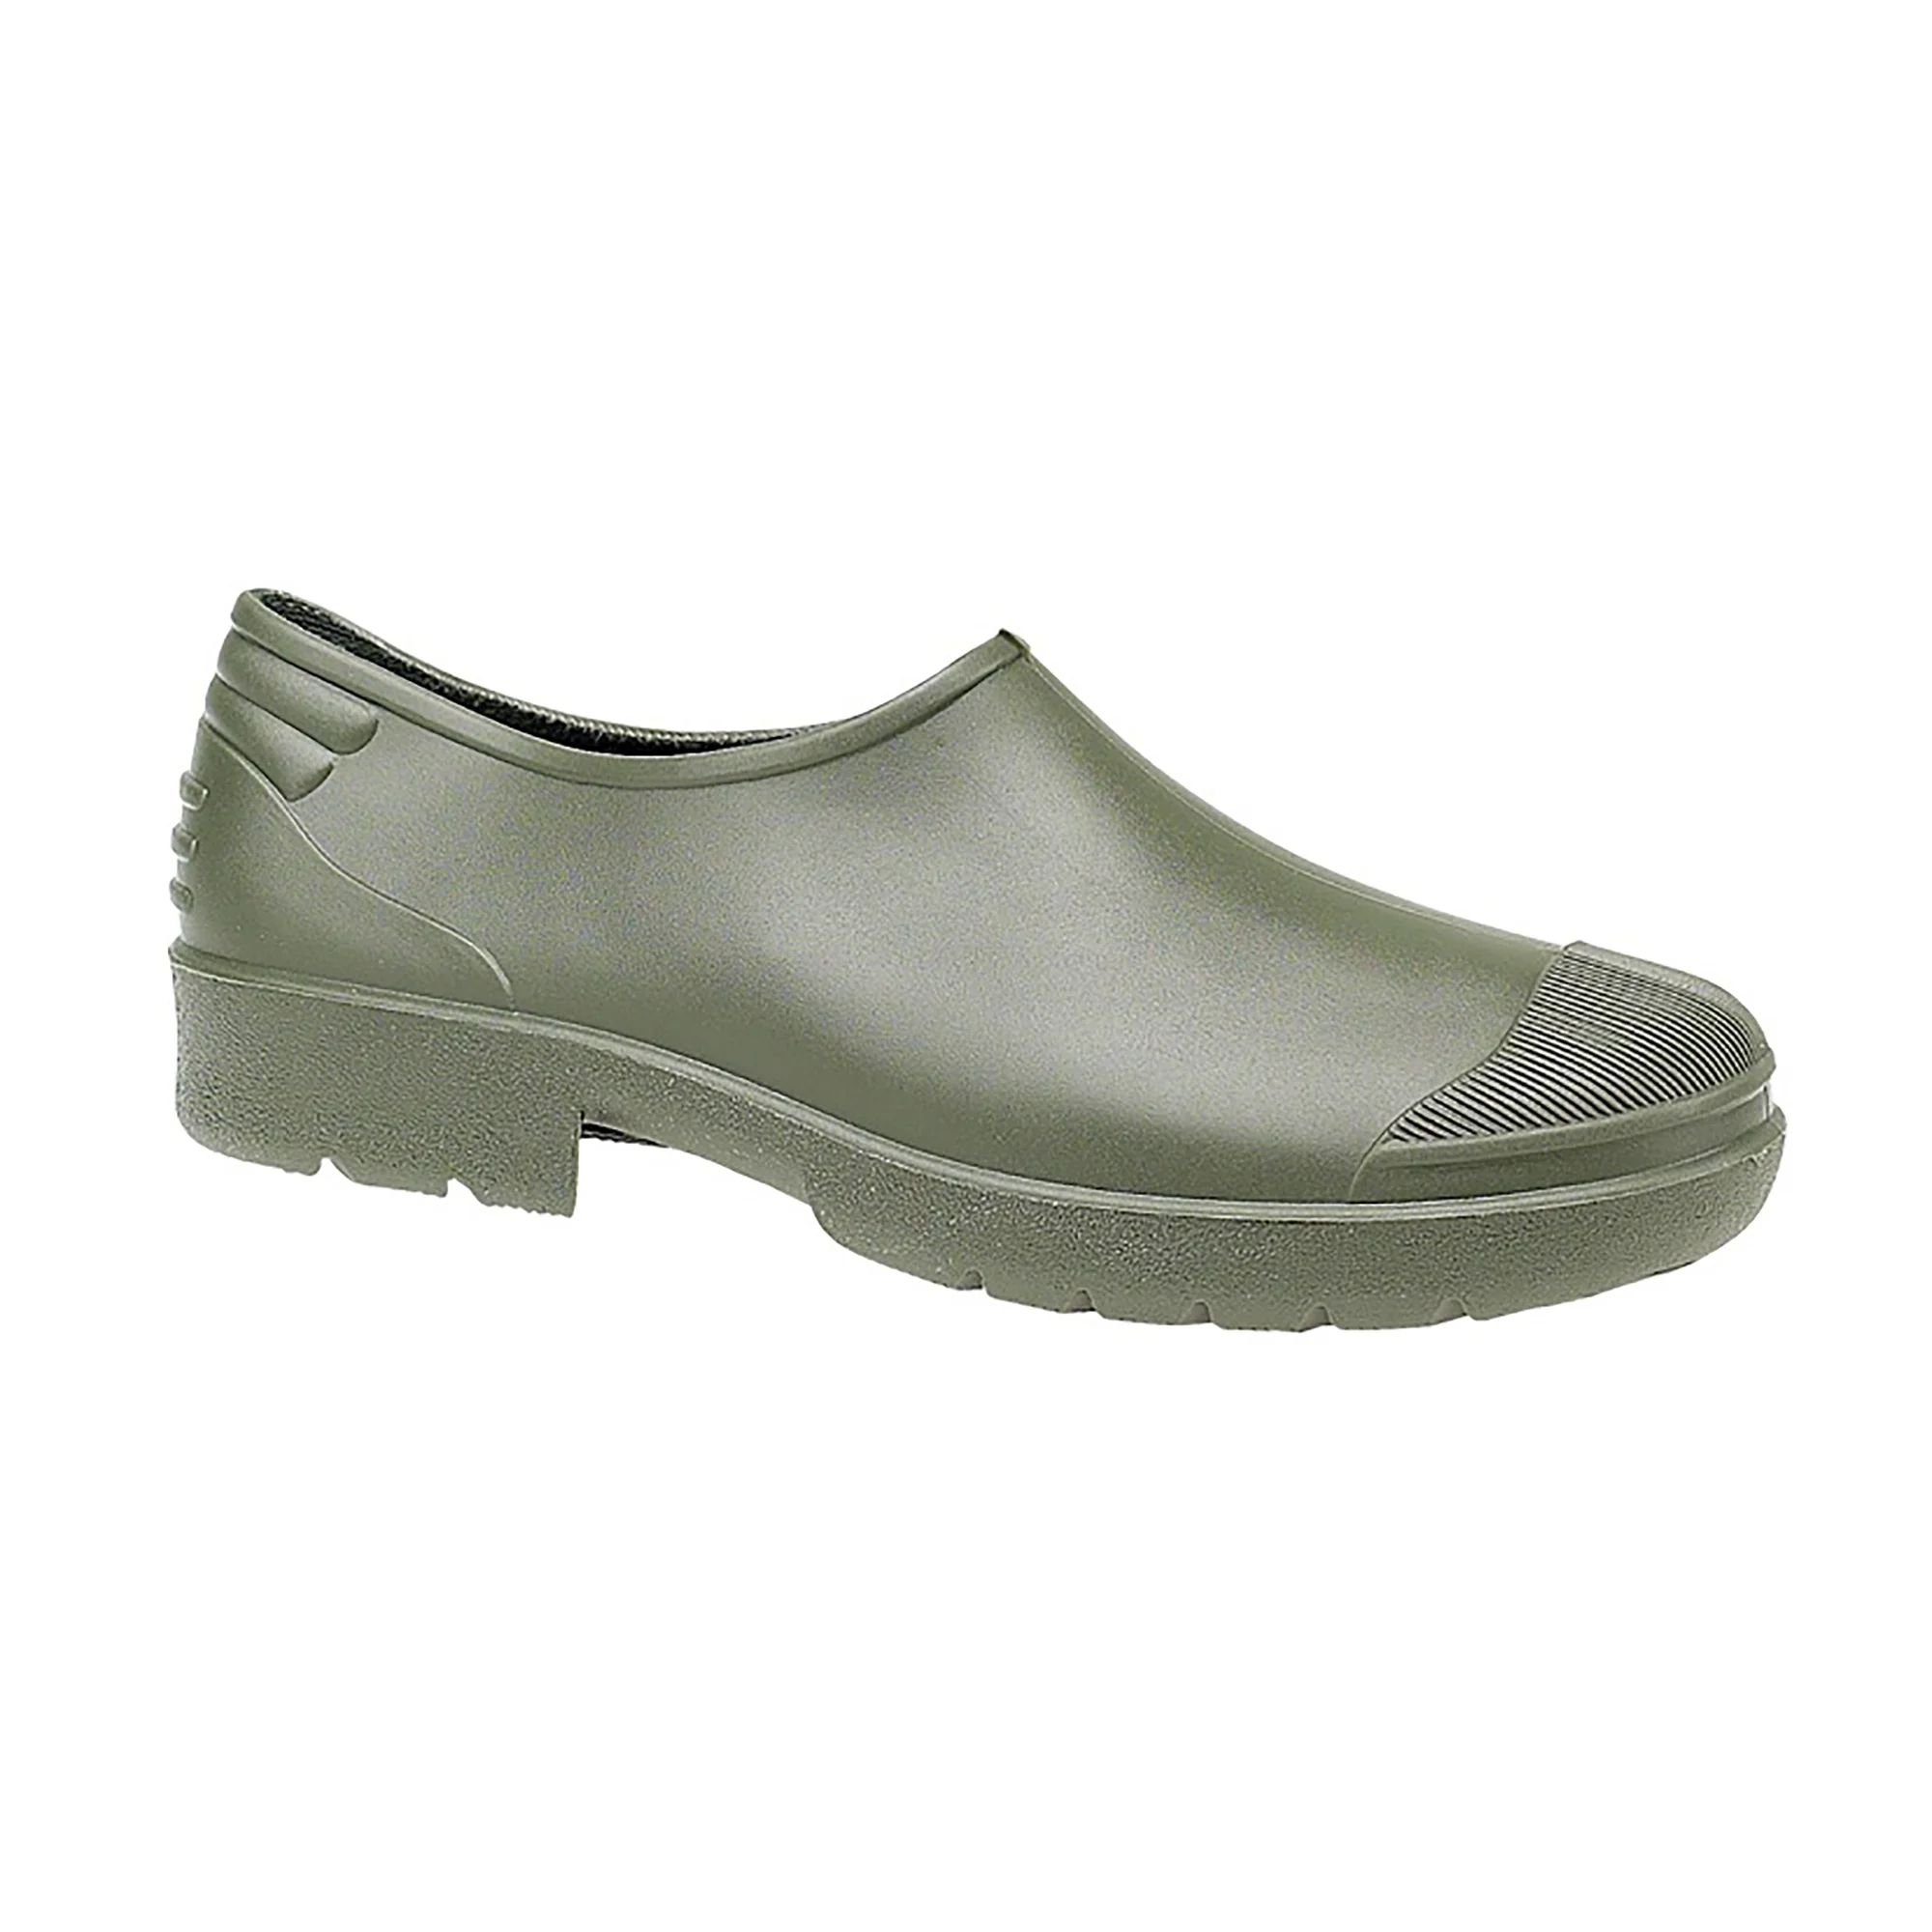 Dikimar Primera Gardening Shoe / Womens Shoes / Garden Shoes | Walmart (US)